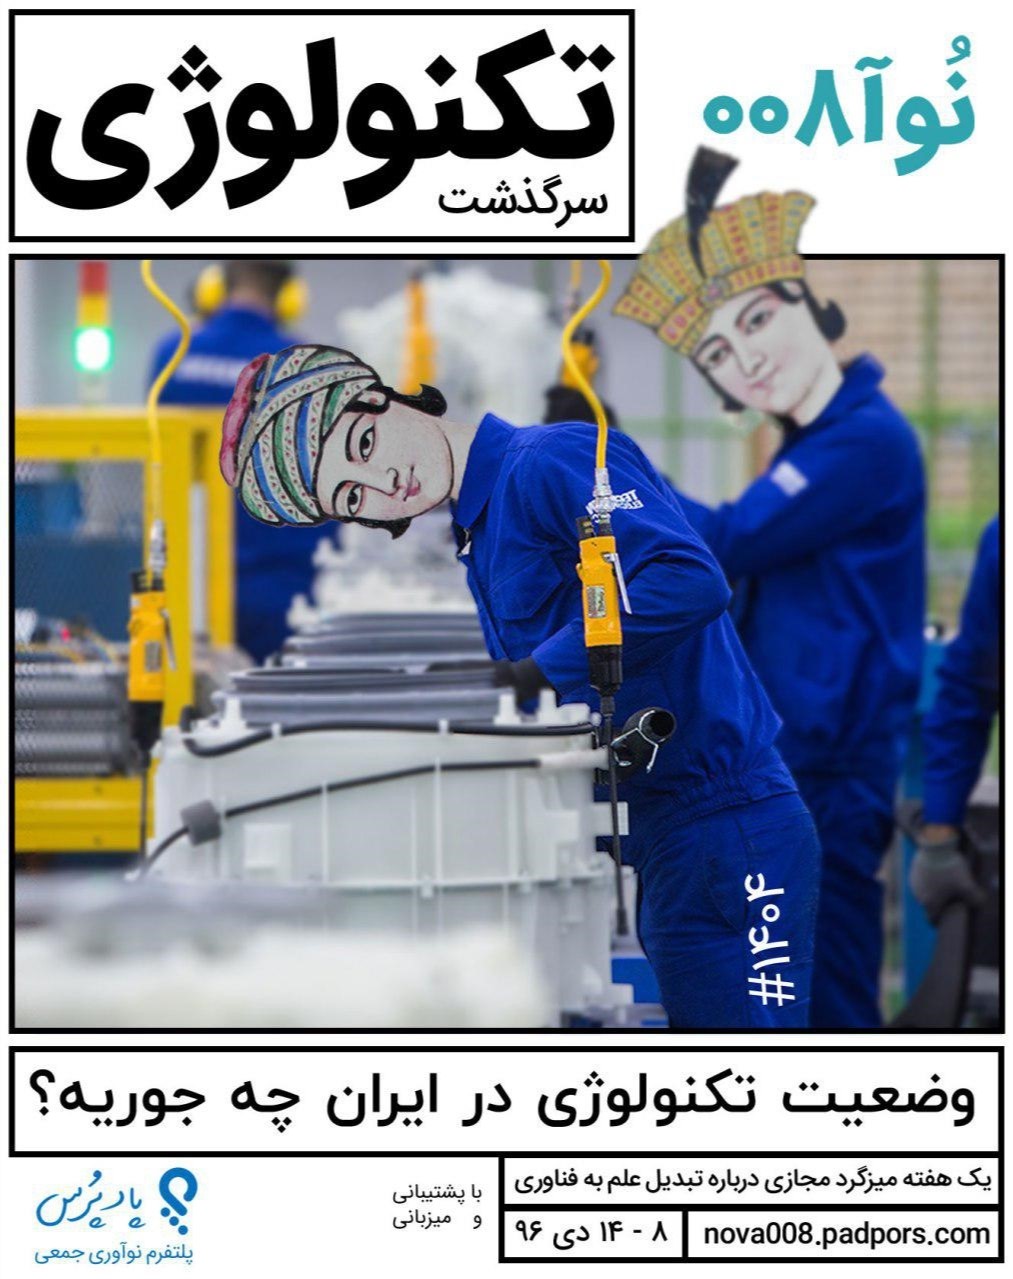 میزگرد مجازی با رویکرد تفکر نقادانه درباره ی وضعیت تکنولوژی در ایران